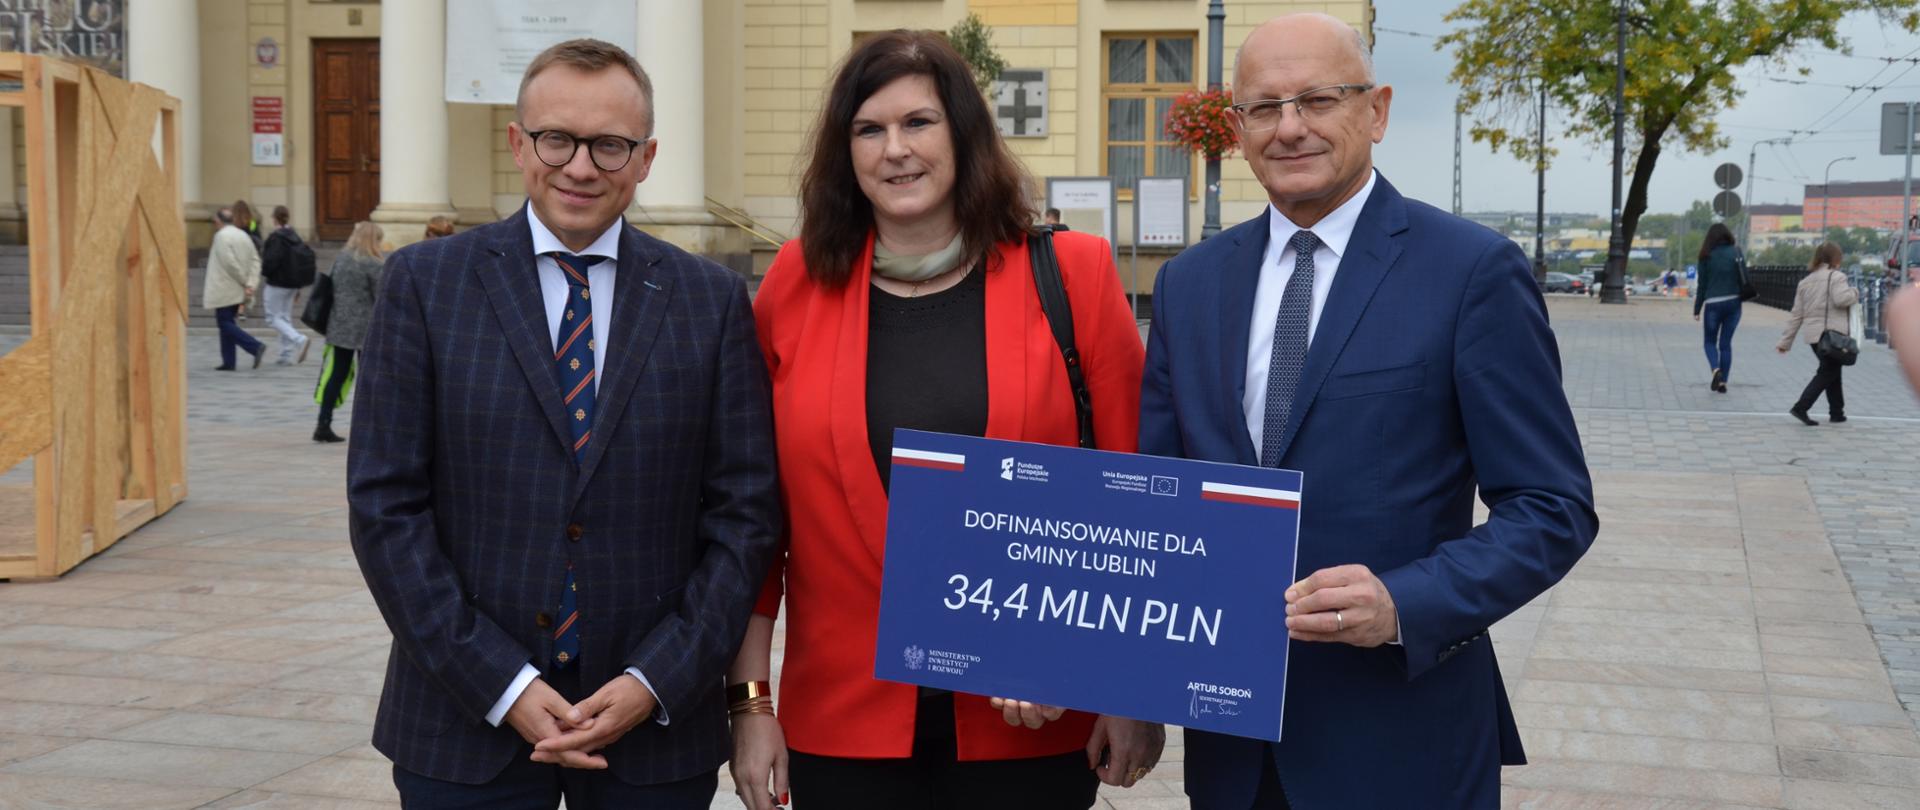 Minister Soboń wraz z dwoma innymi osobami stoi z banerem na którym jest napisane Dofinansowanie dla Gminy Lublin, 34,4 mln zł